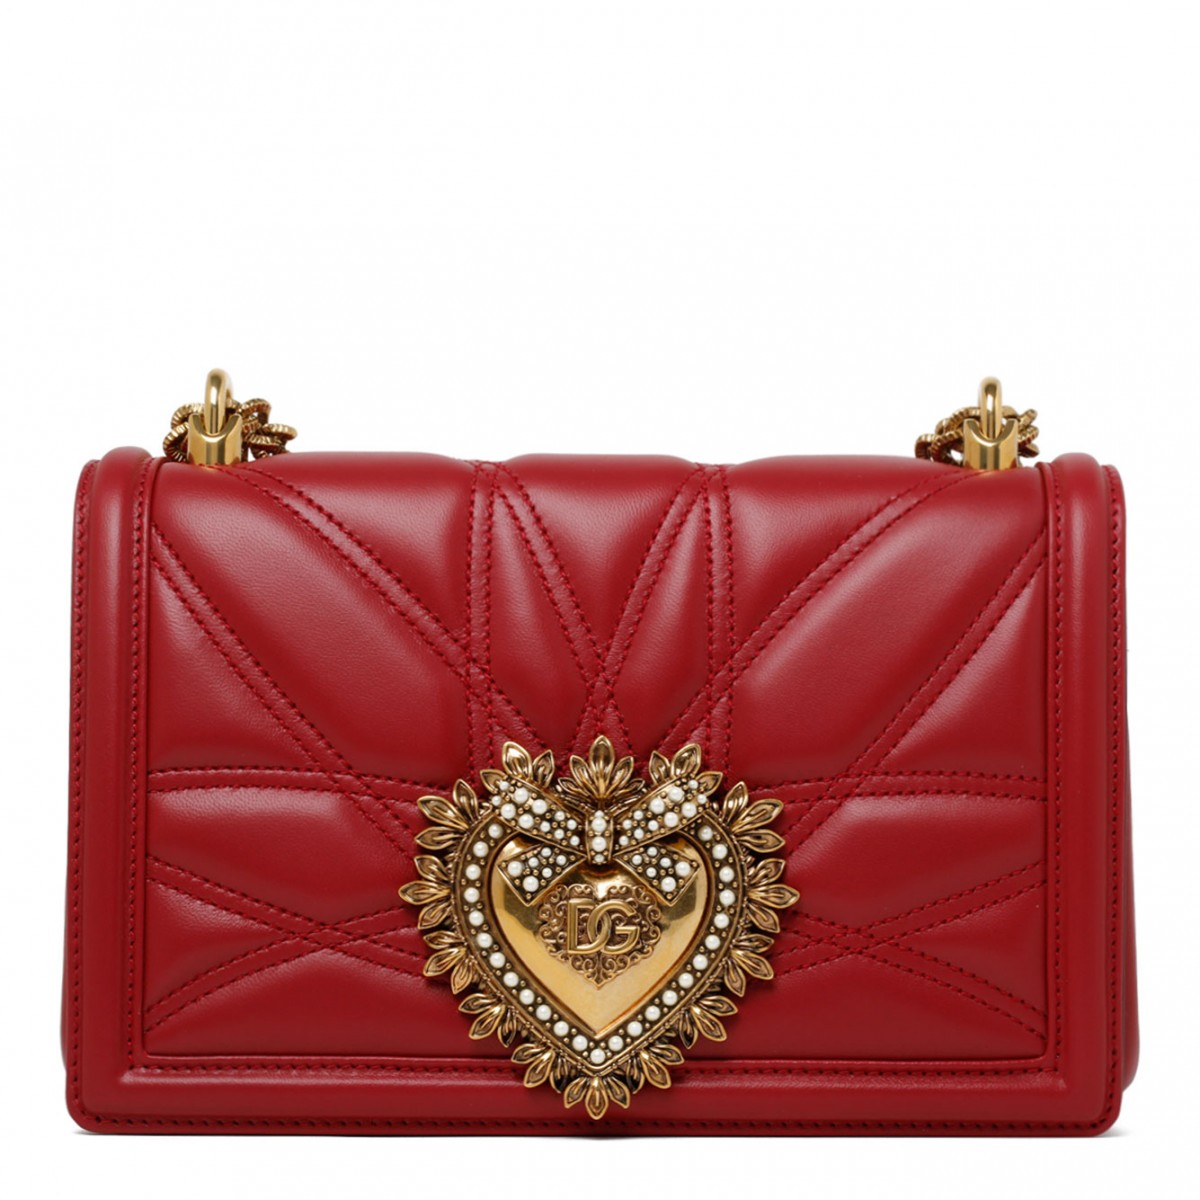 Red Calf Leather Medium Devotion Shoulder Bag